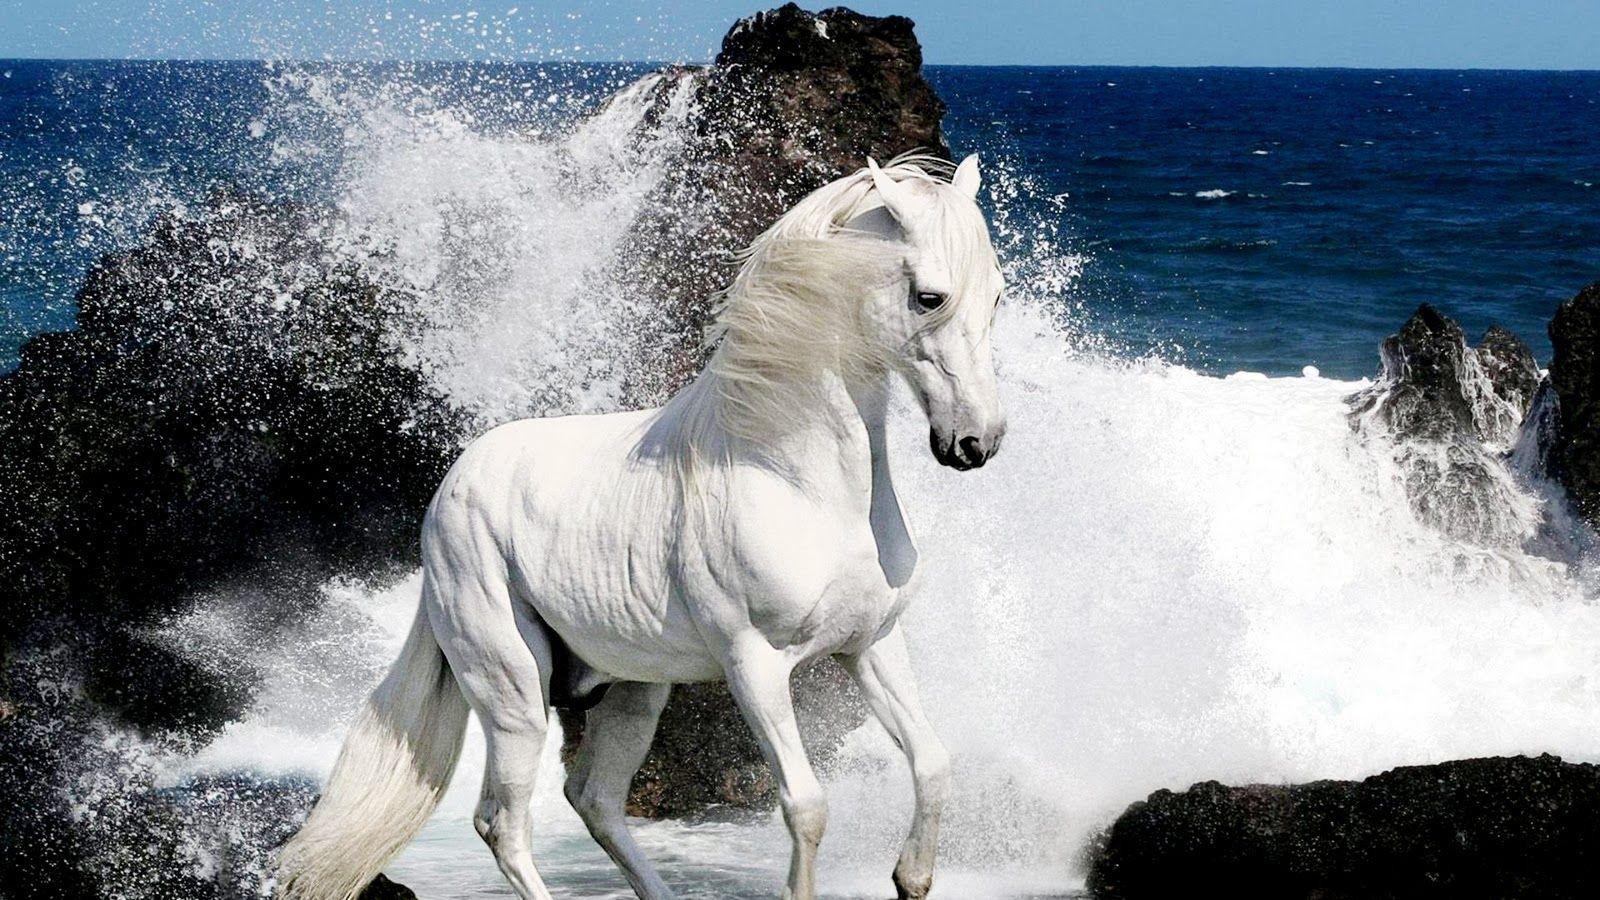 Beautiful arabian horses .com.au